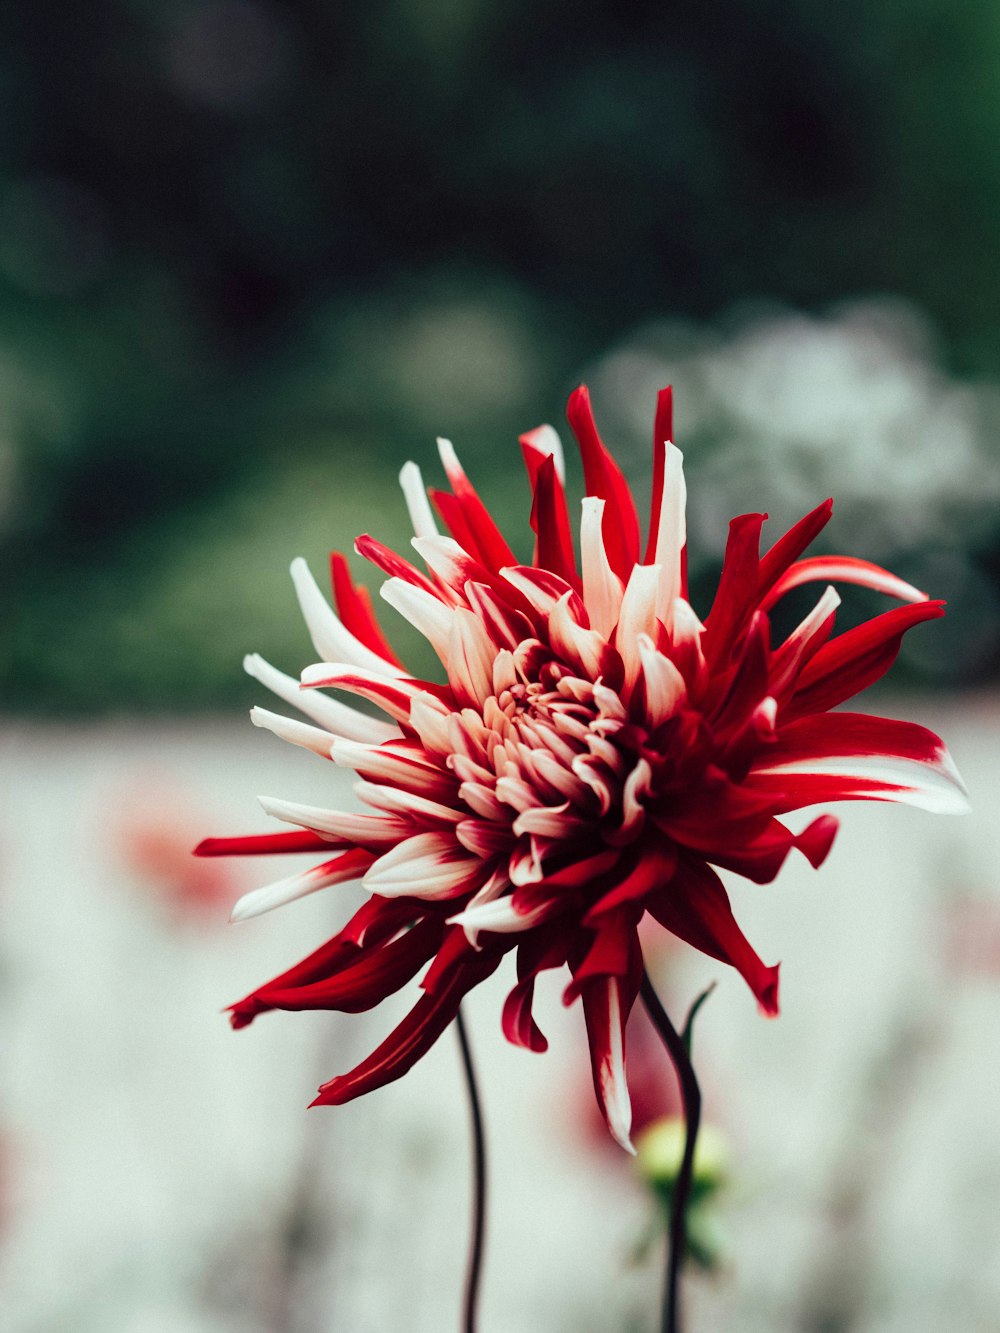 Photographie à mise au point peu profonde de fleurs rouges et blanches